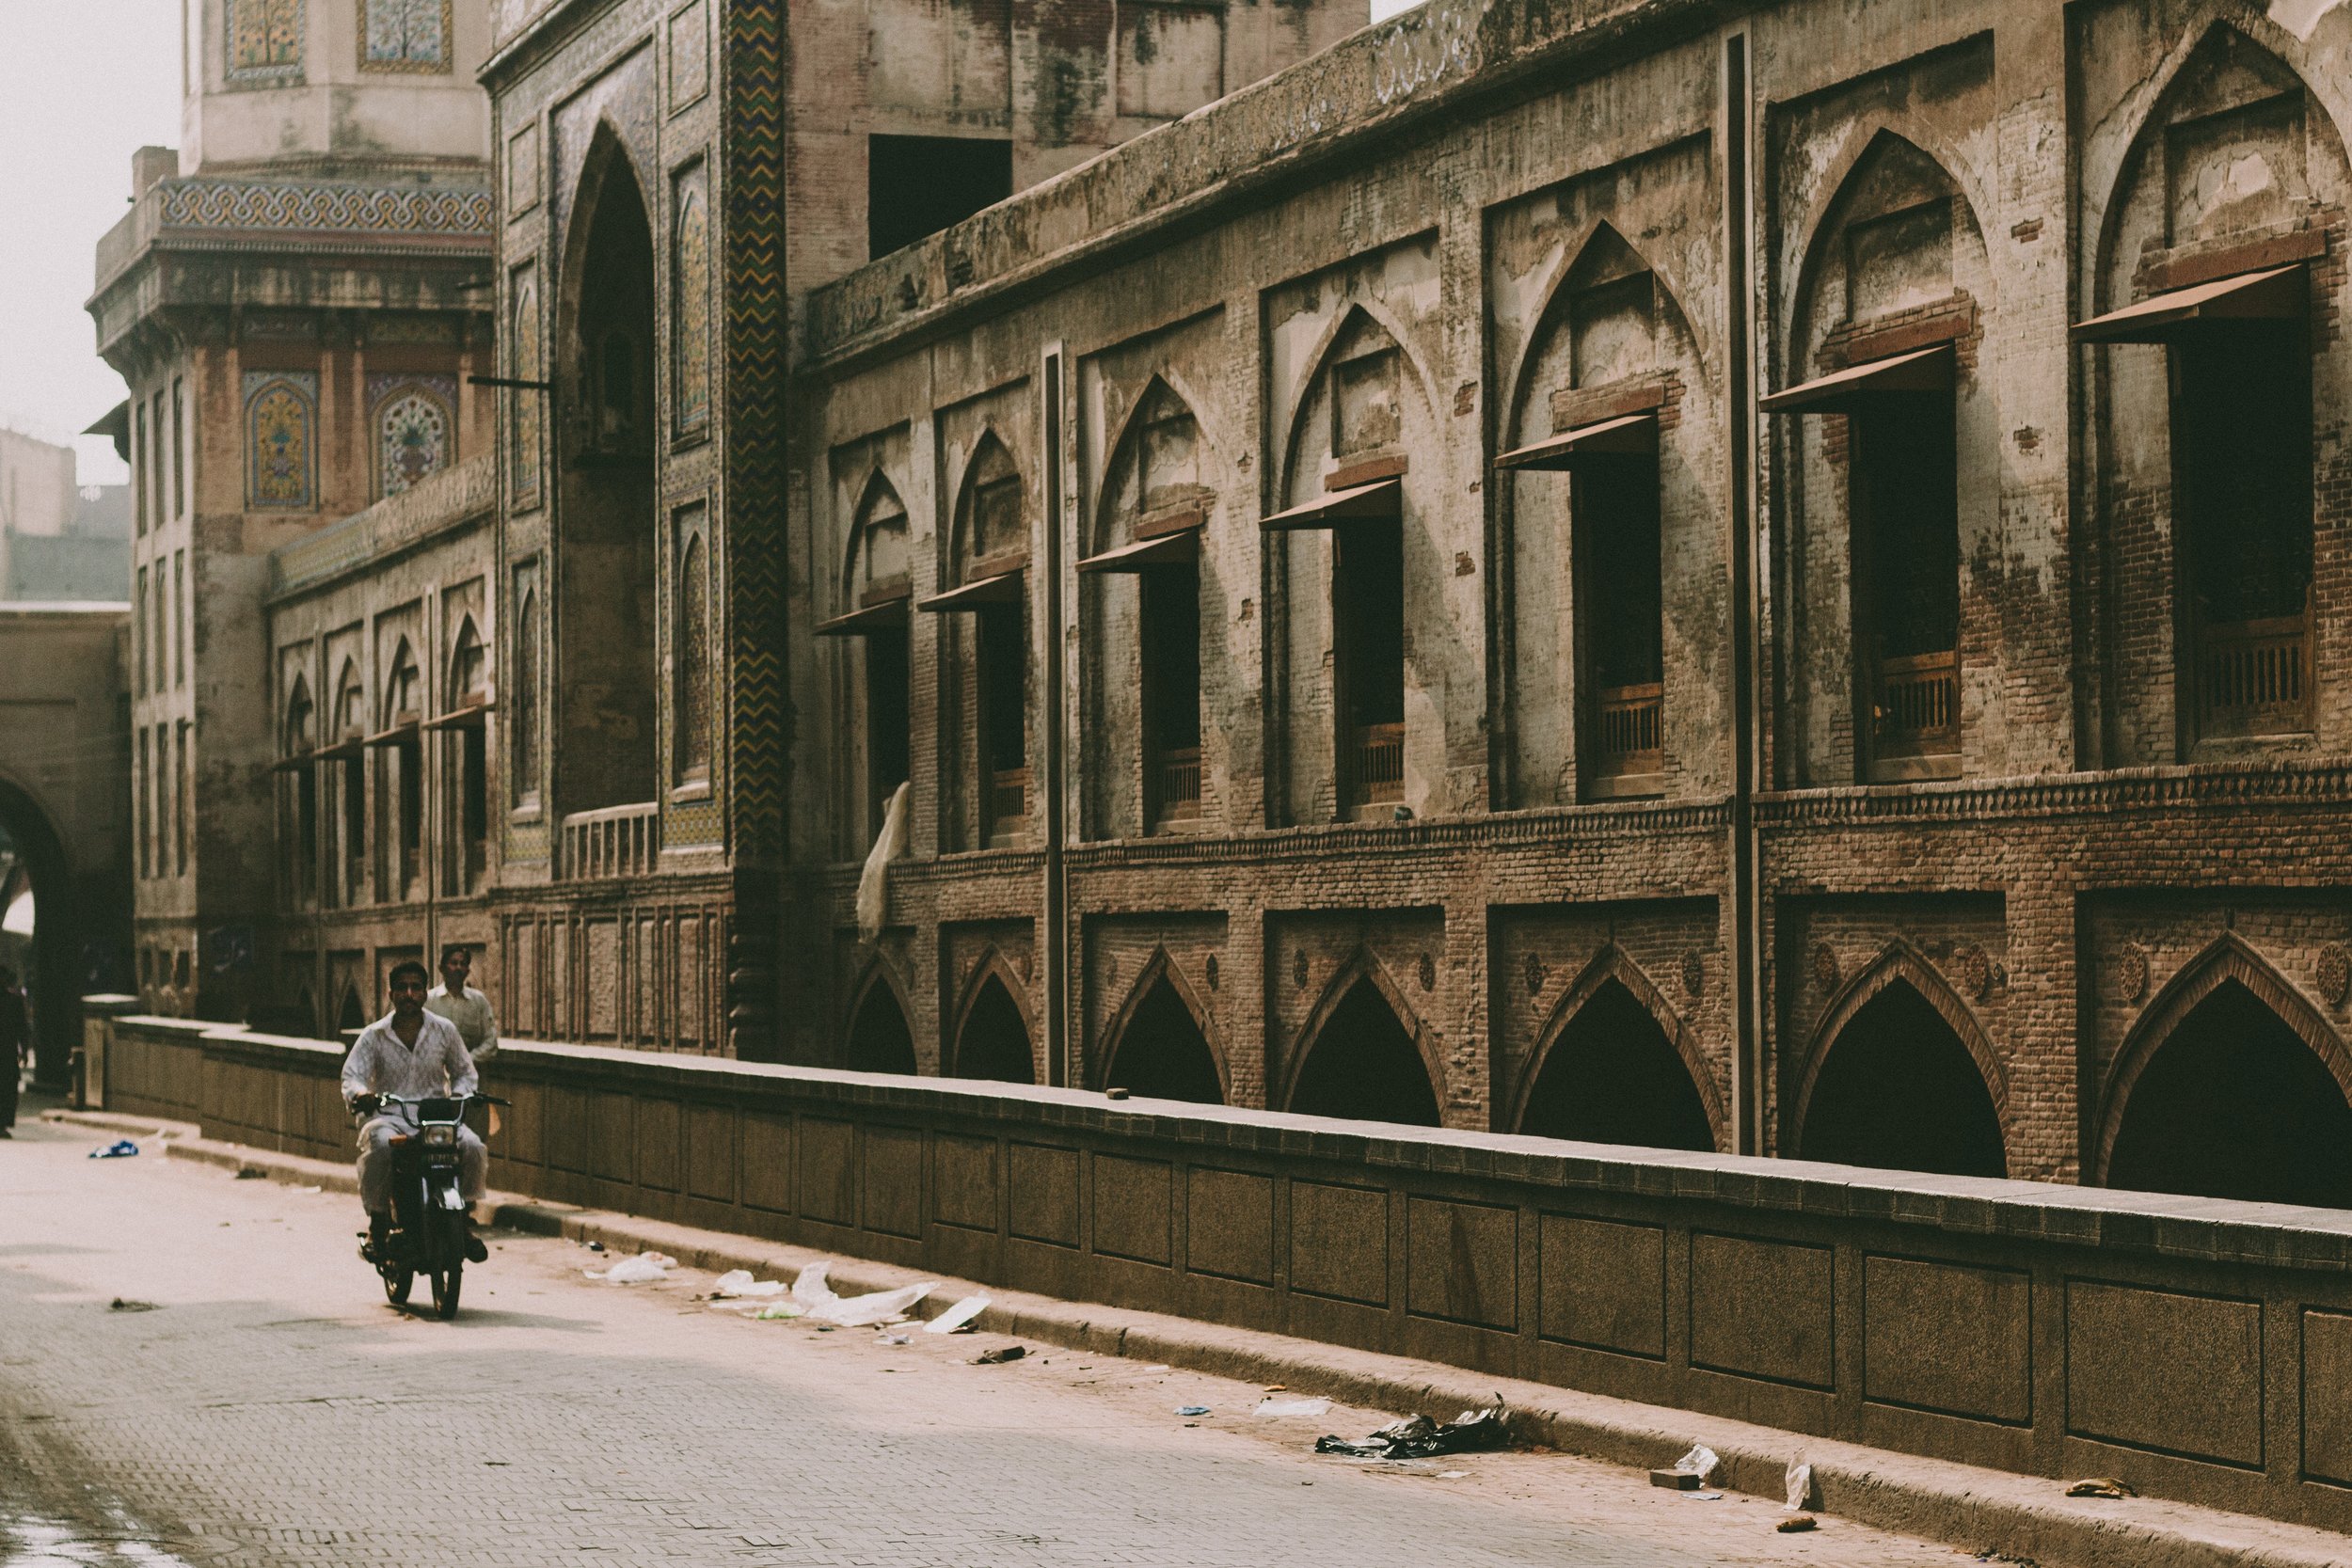 Photo 105 - Man on Motorcycle in Lahore.jpg